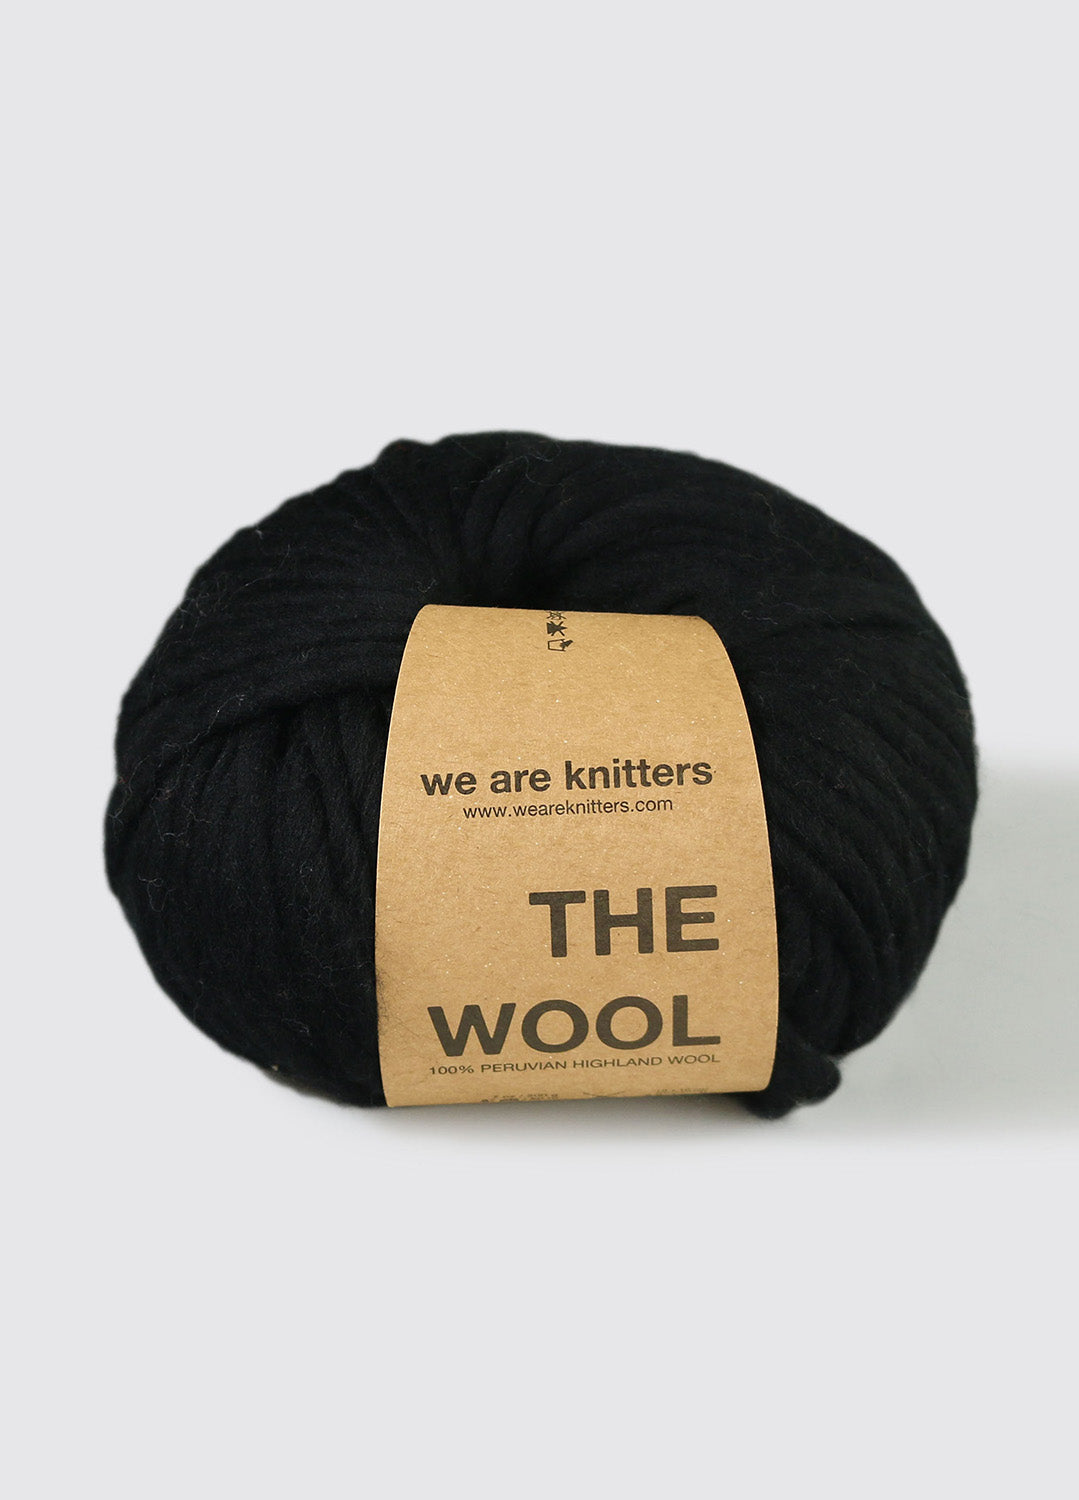 The Mixed Yarn Denim – weareknitters